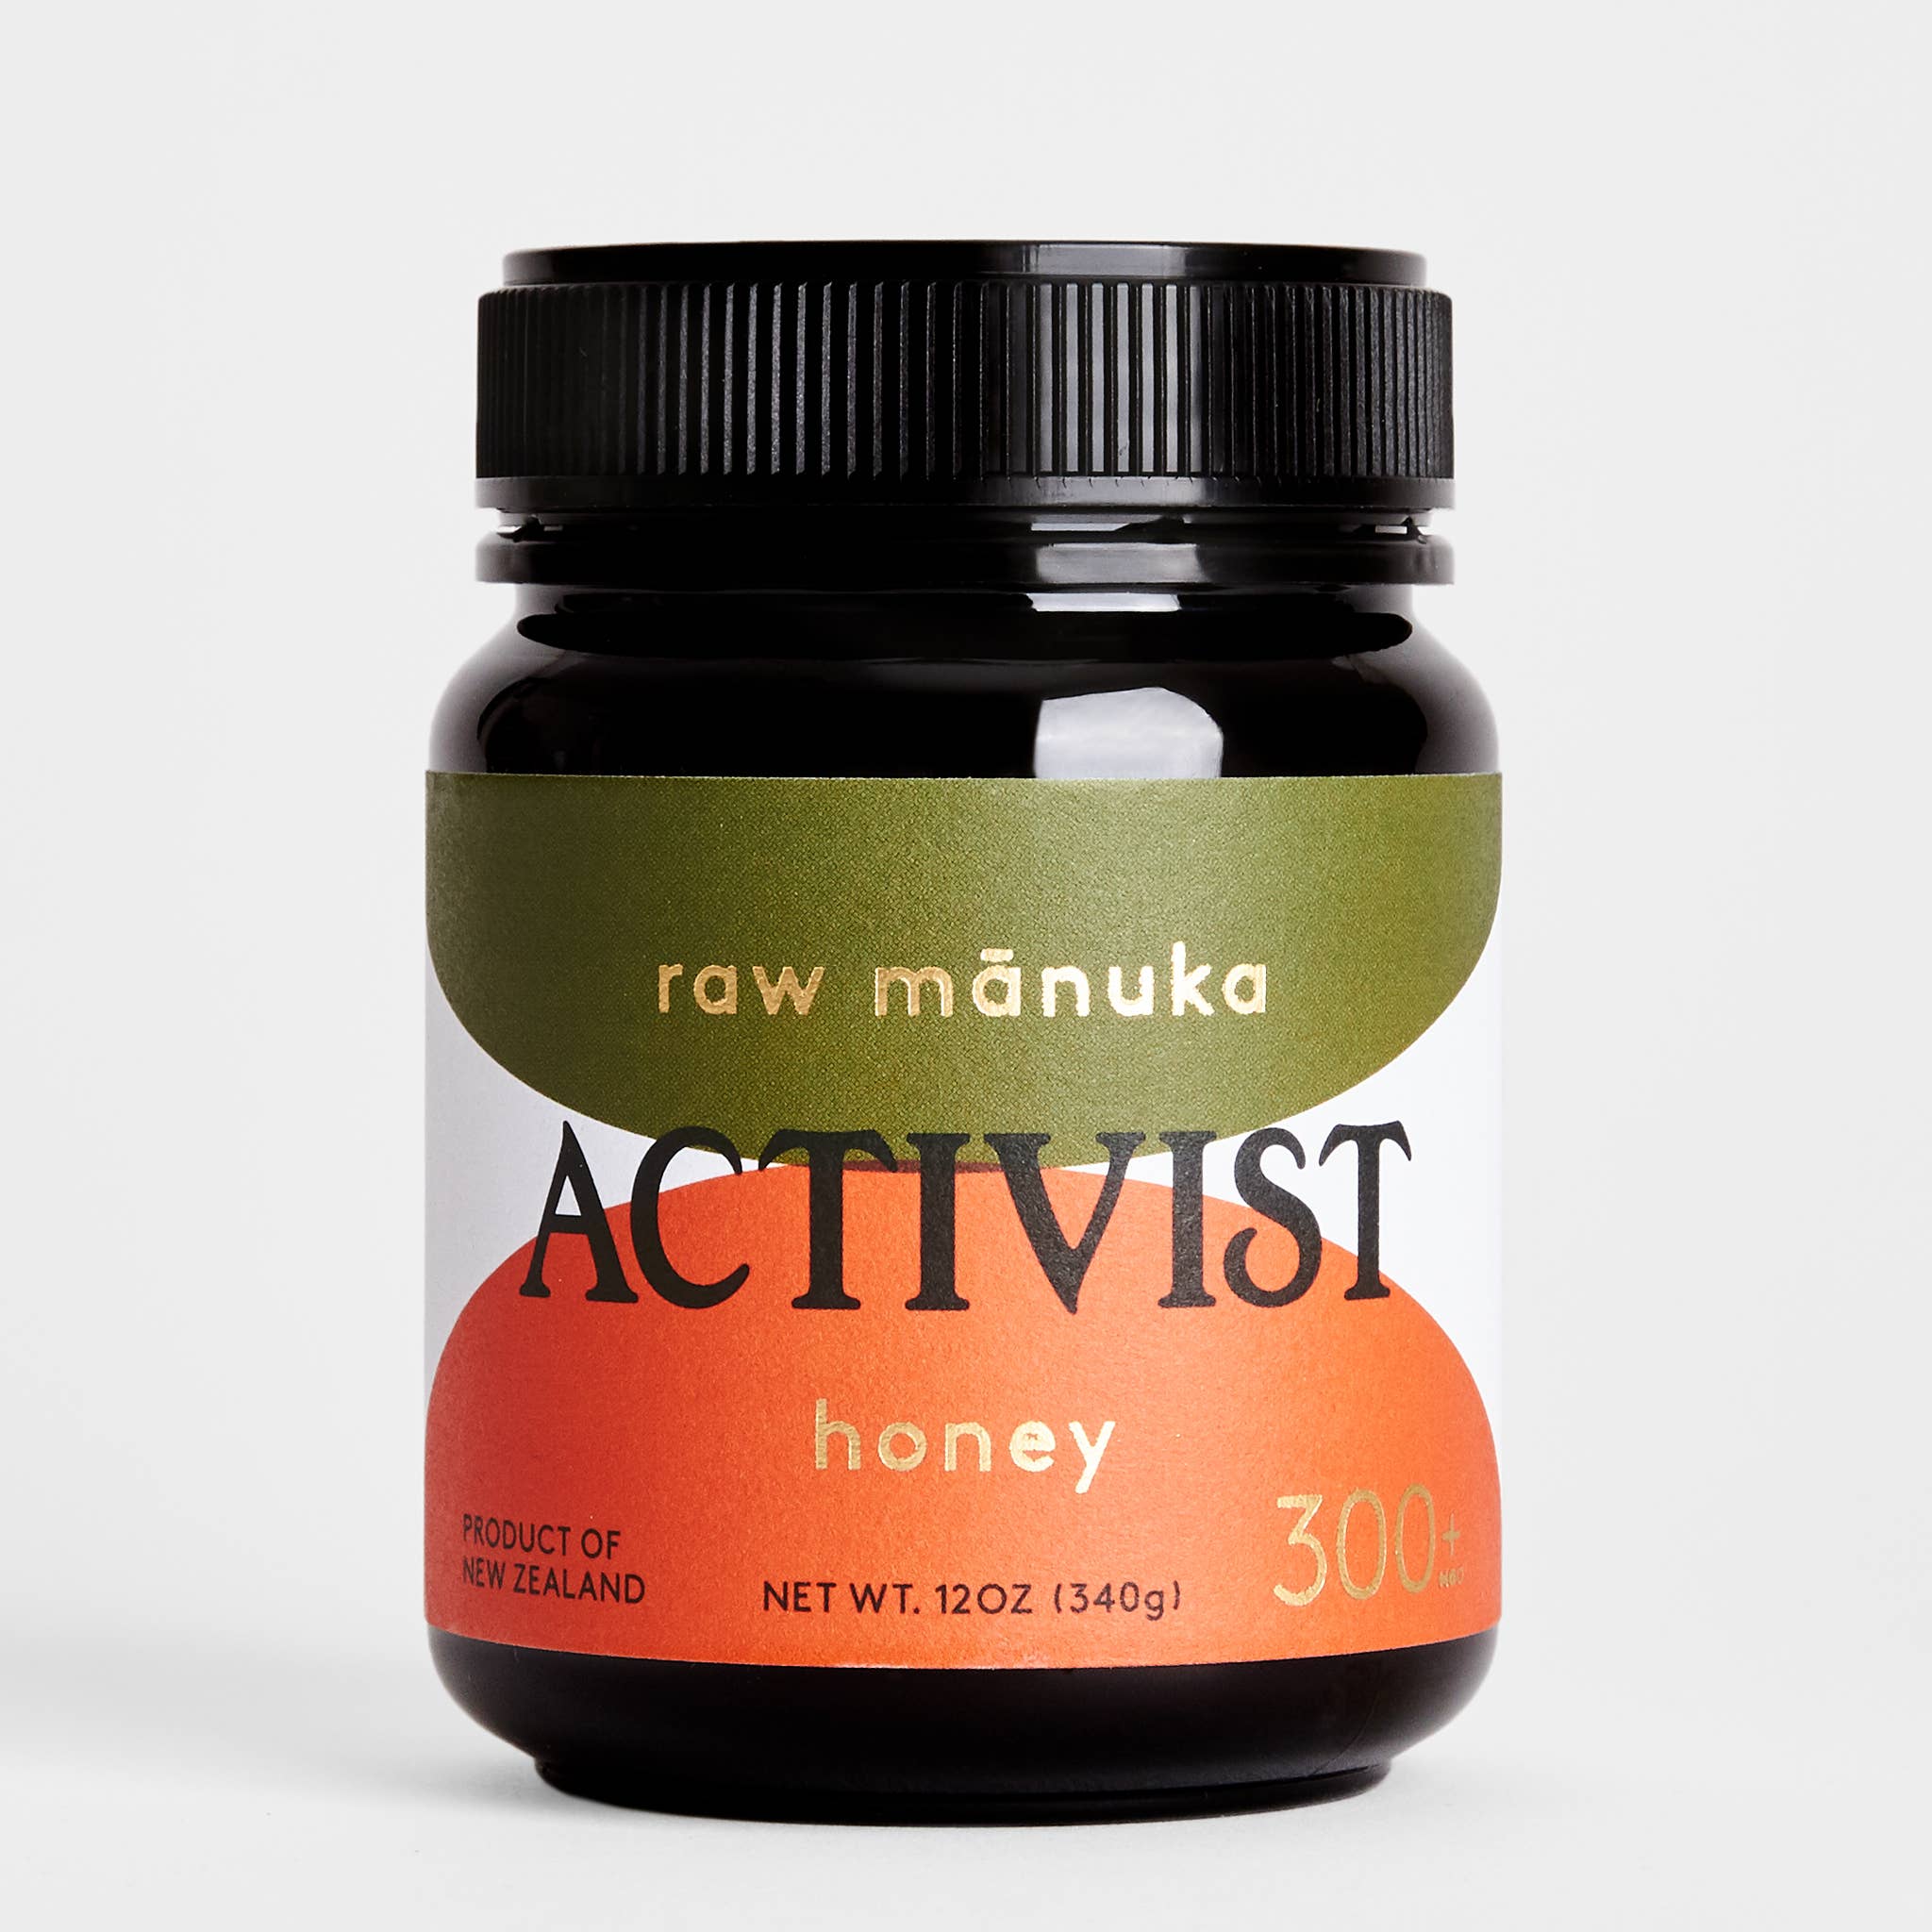 ACTIVIST - Wellbeing Activist Honey 300+ MGO